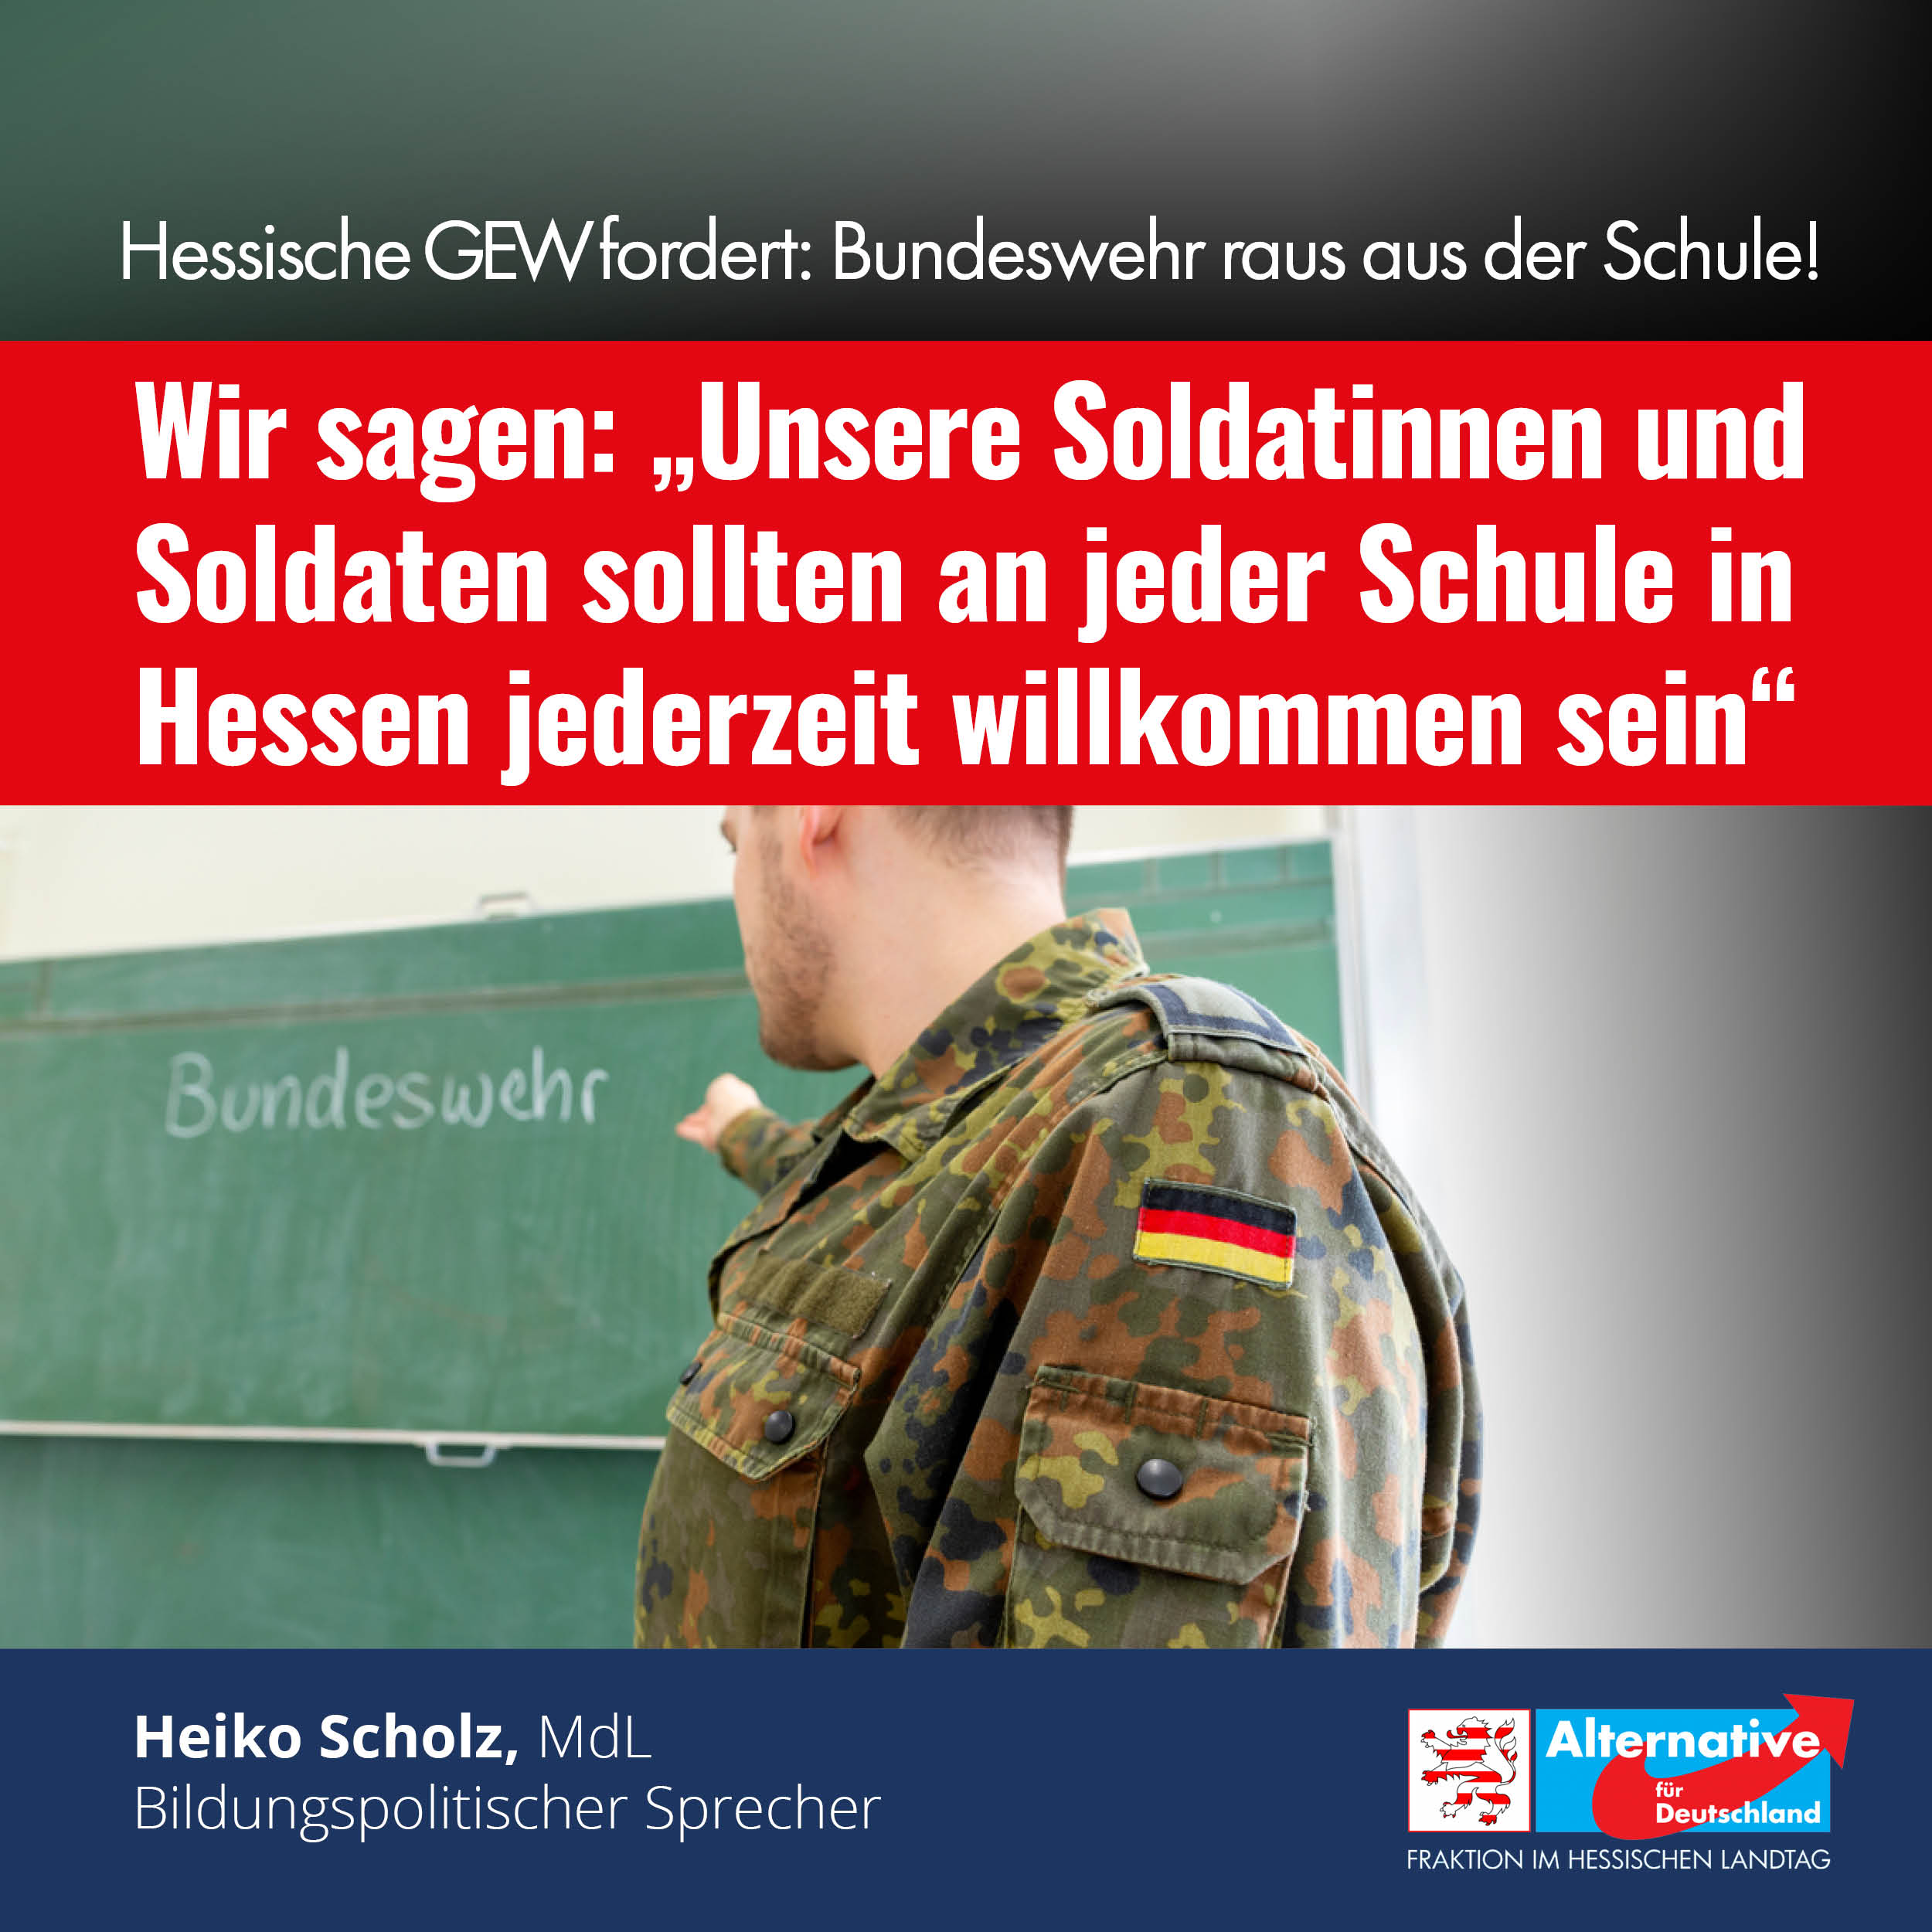 You are currently viewing Unsere Soldaten sollten an jeder Schule in Hessen jederzeit willkommen sein